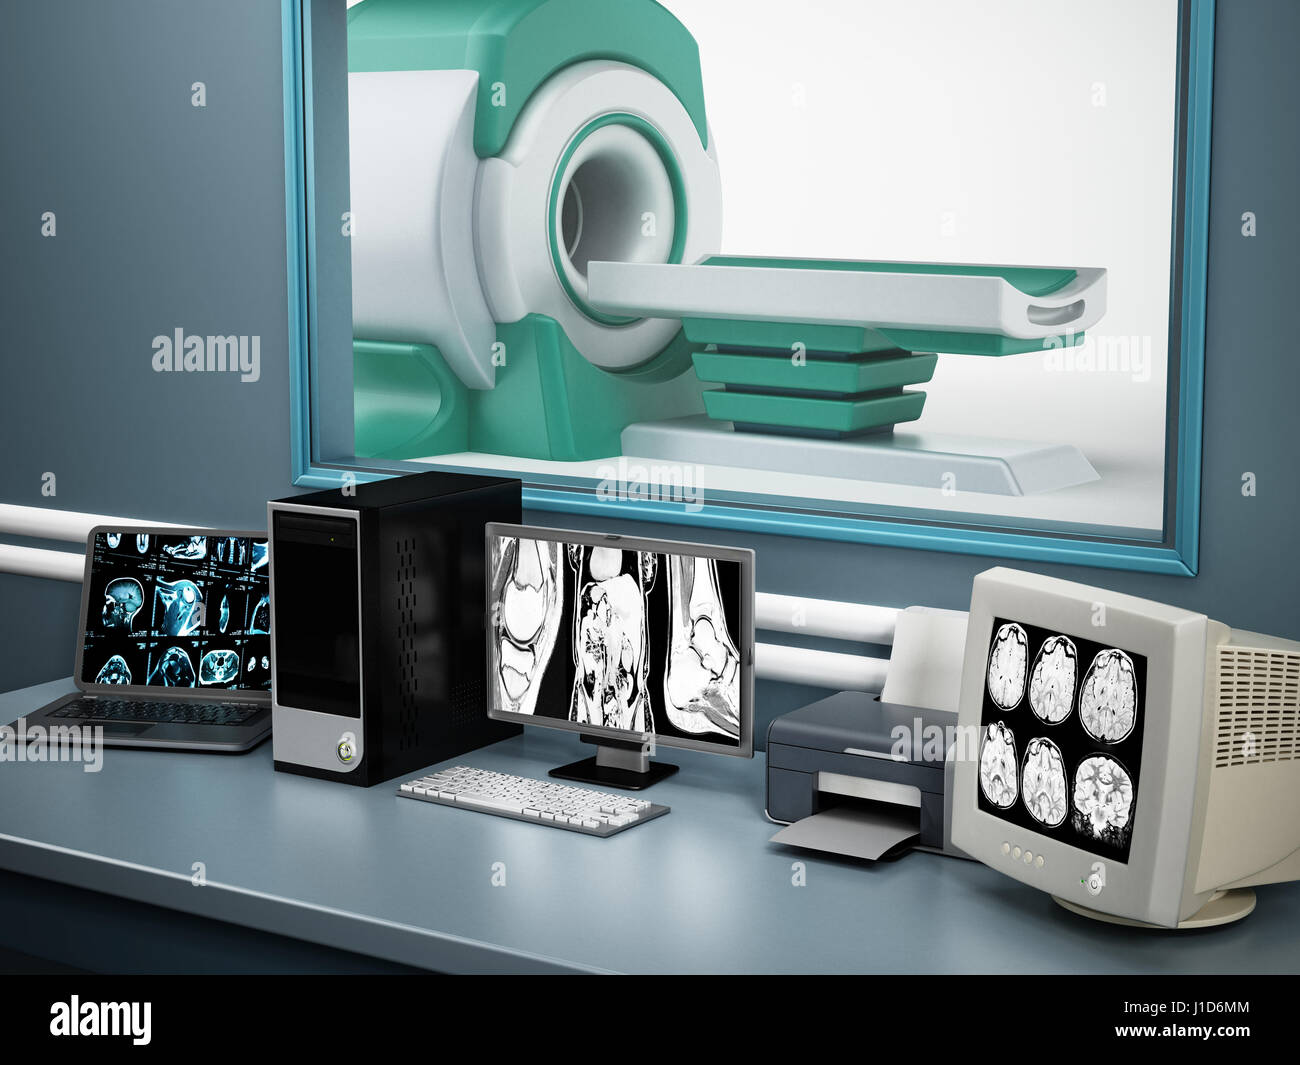 Magnet-Resonanz-Tomographie MRT-Gerät und Computer-Systeme Stockfotografie  - Alamy